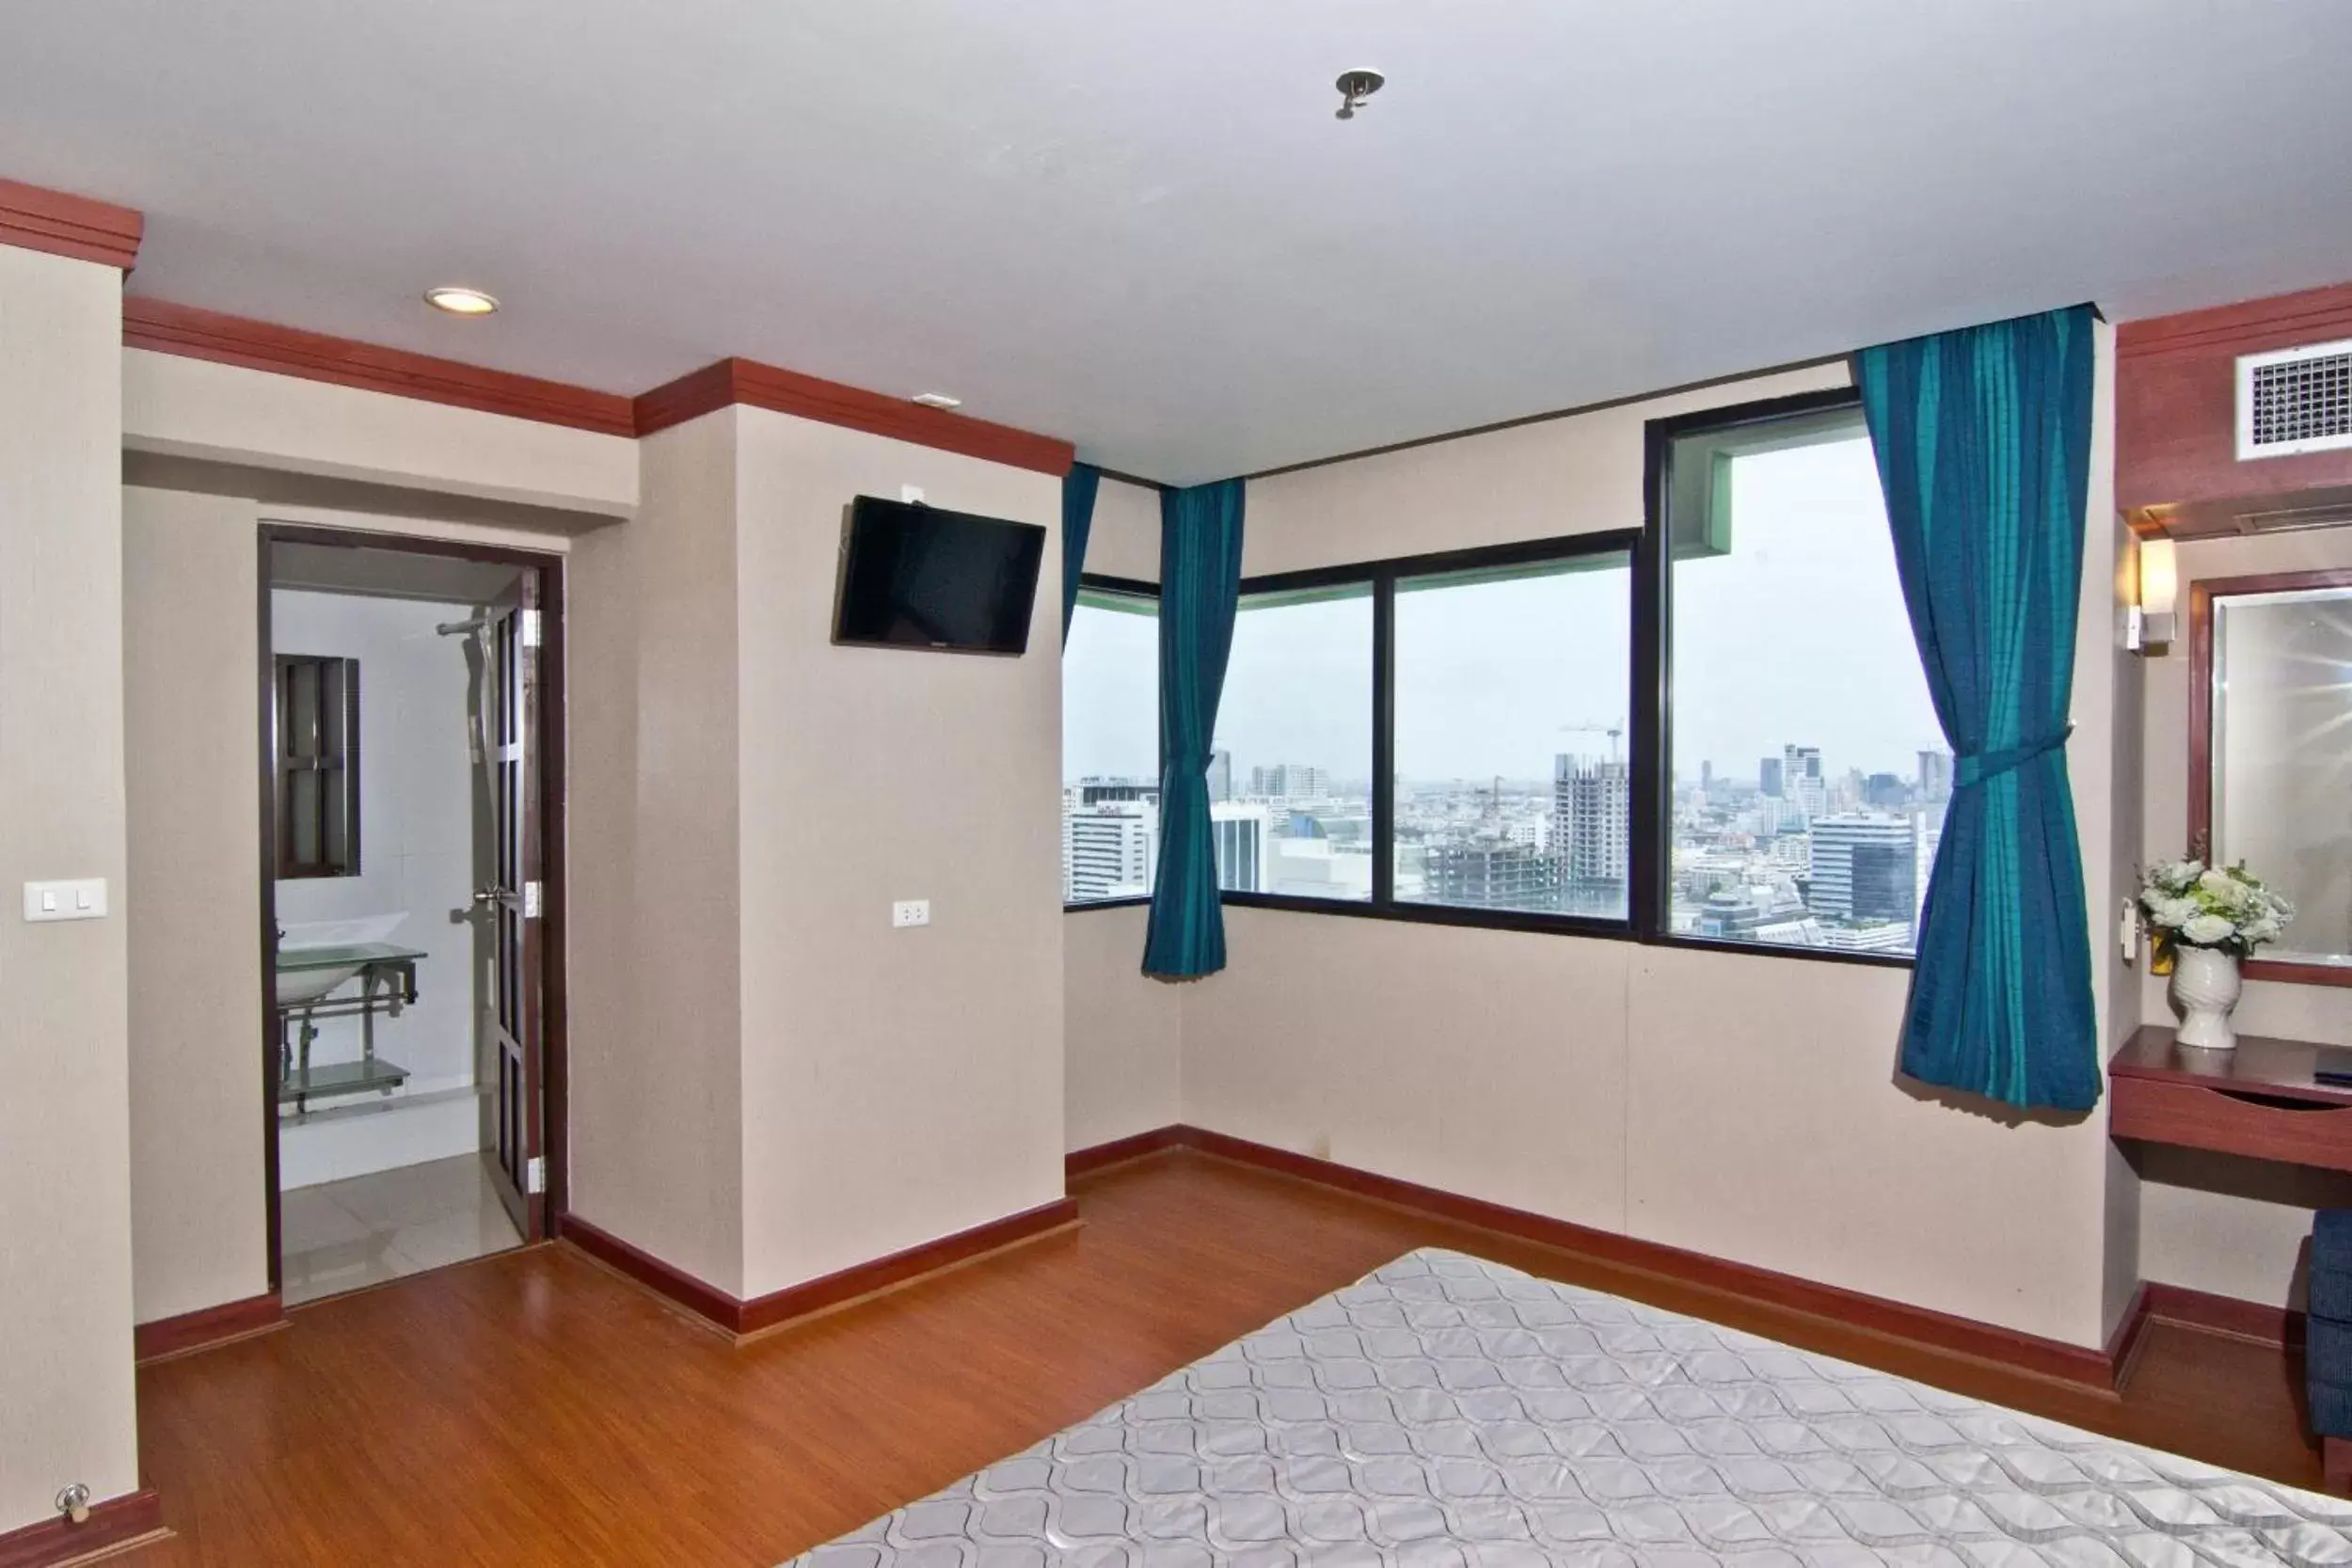 Bedroom in Baiyoke Suite Hotel